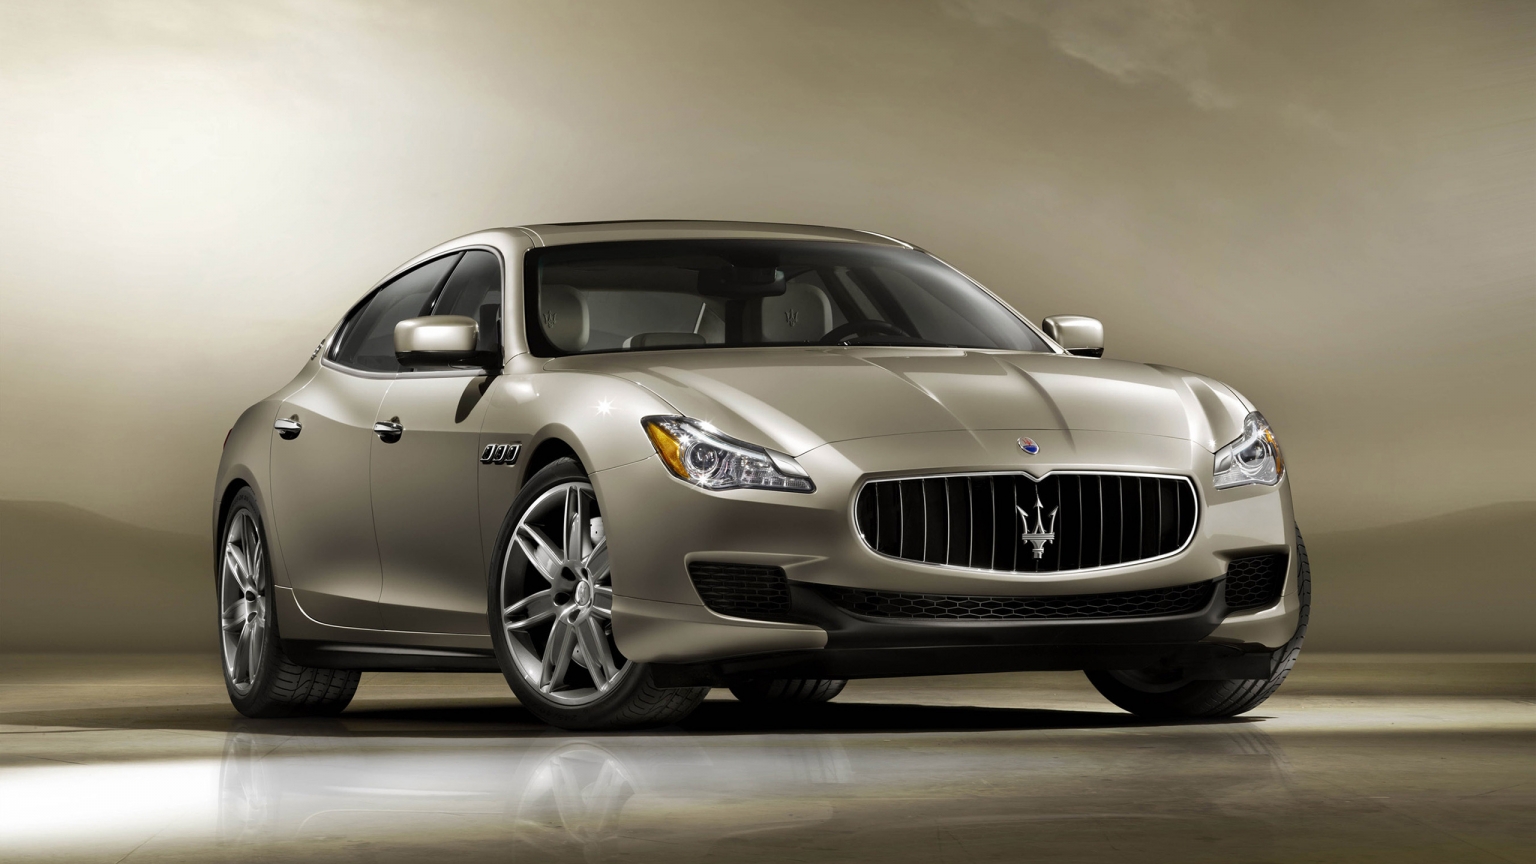 2013 Maserati Quattroporte Front for 1536 x 864 HDTV resolution